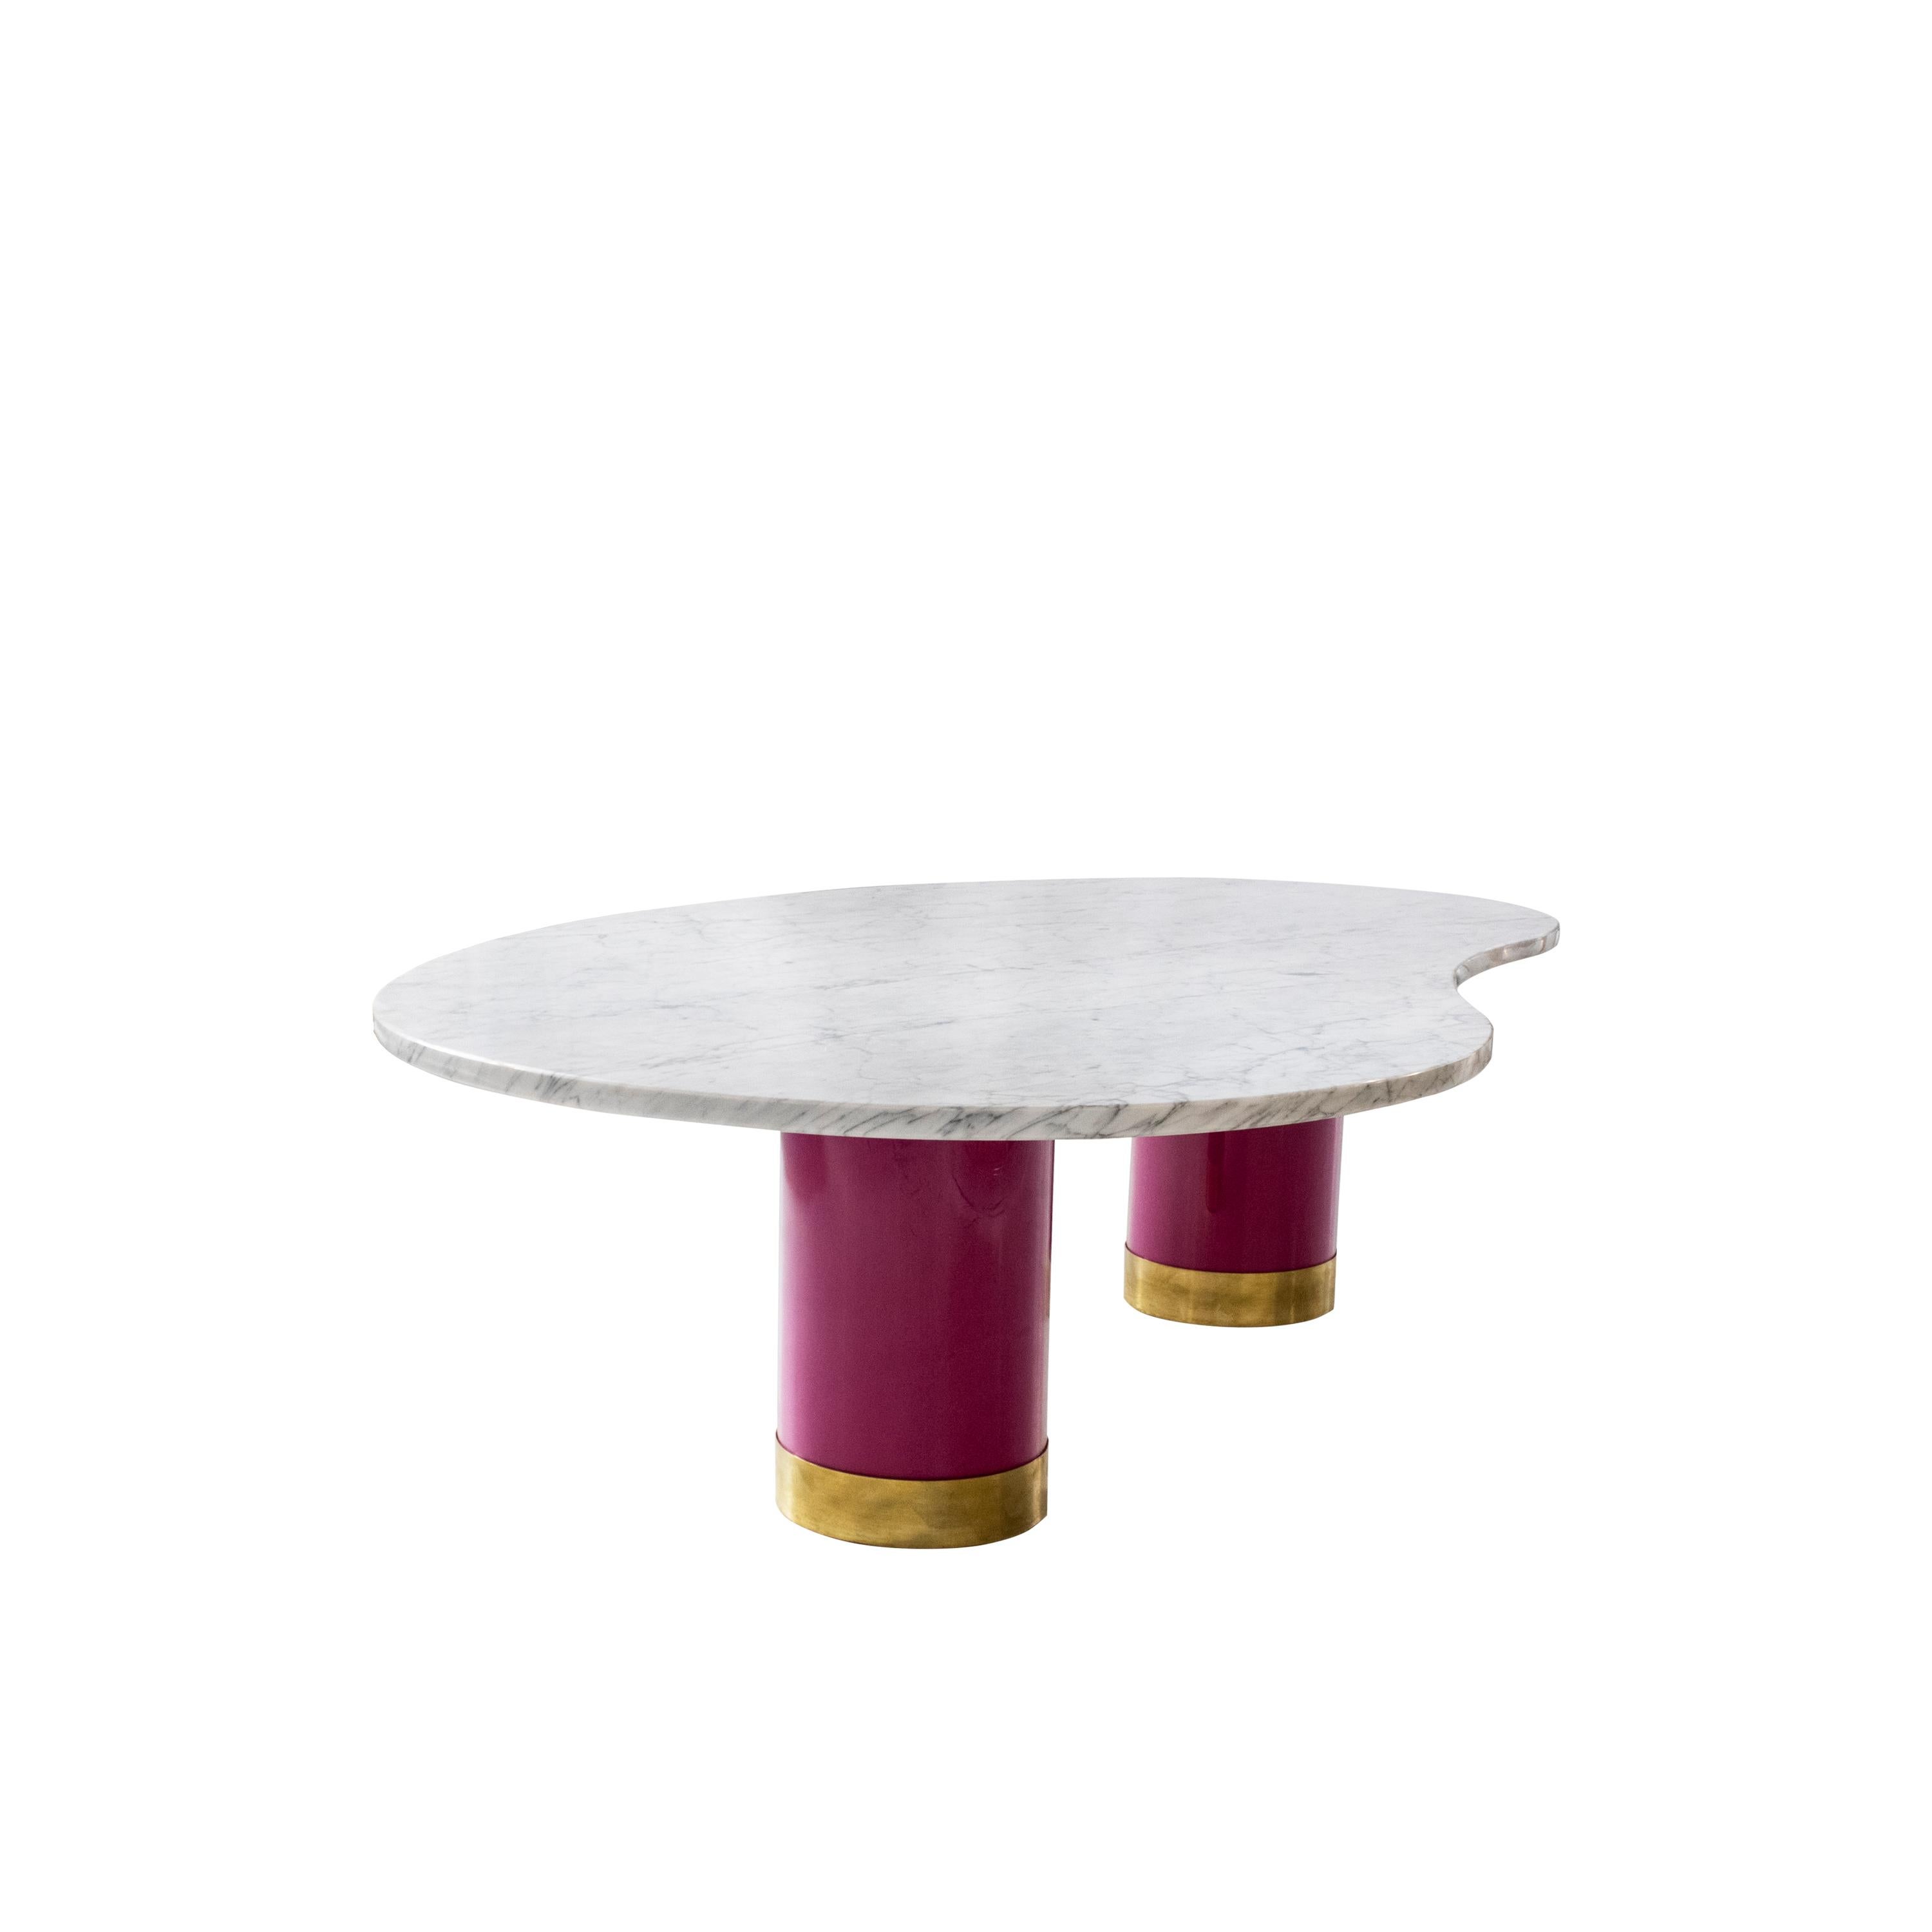 Table basse conçue par IKB 191, avec deux bases en méthacrylate transparent rempli d'un pigment naturel rose, finies par une plaque en laiton et un plateau incurvé en marbre de Carrare.